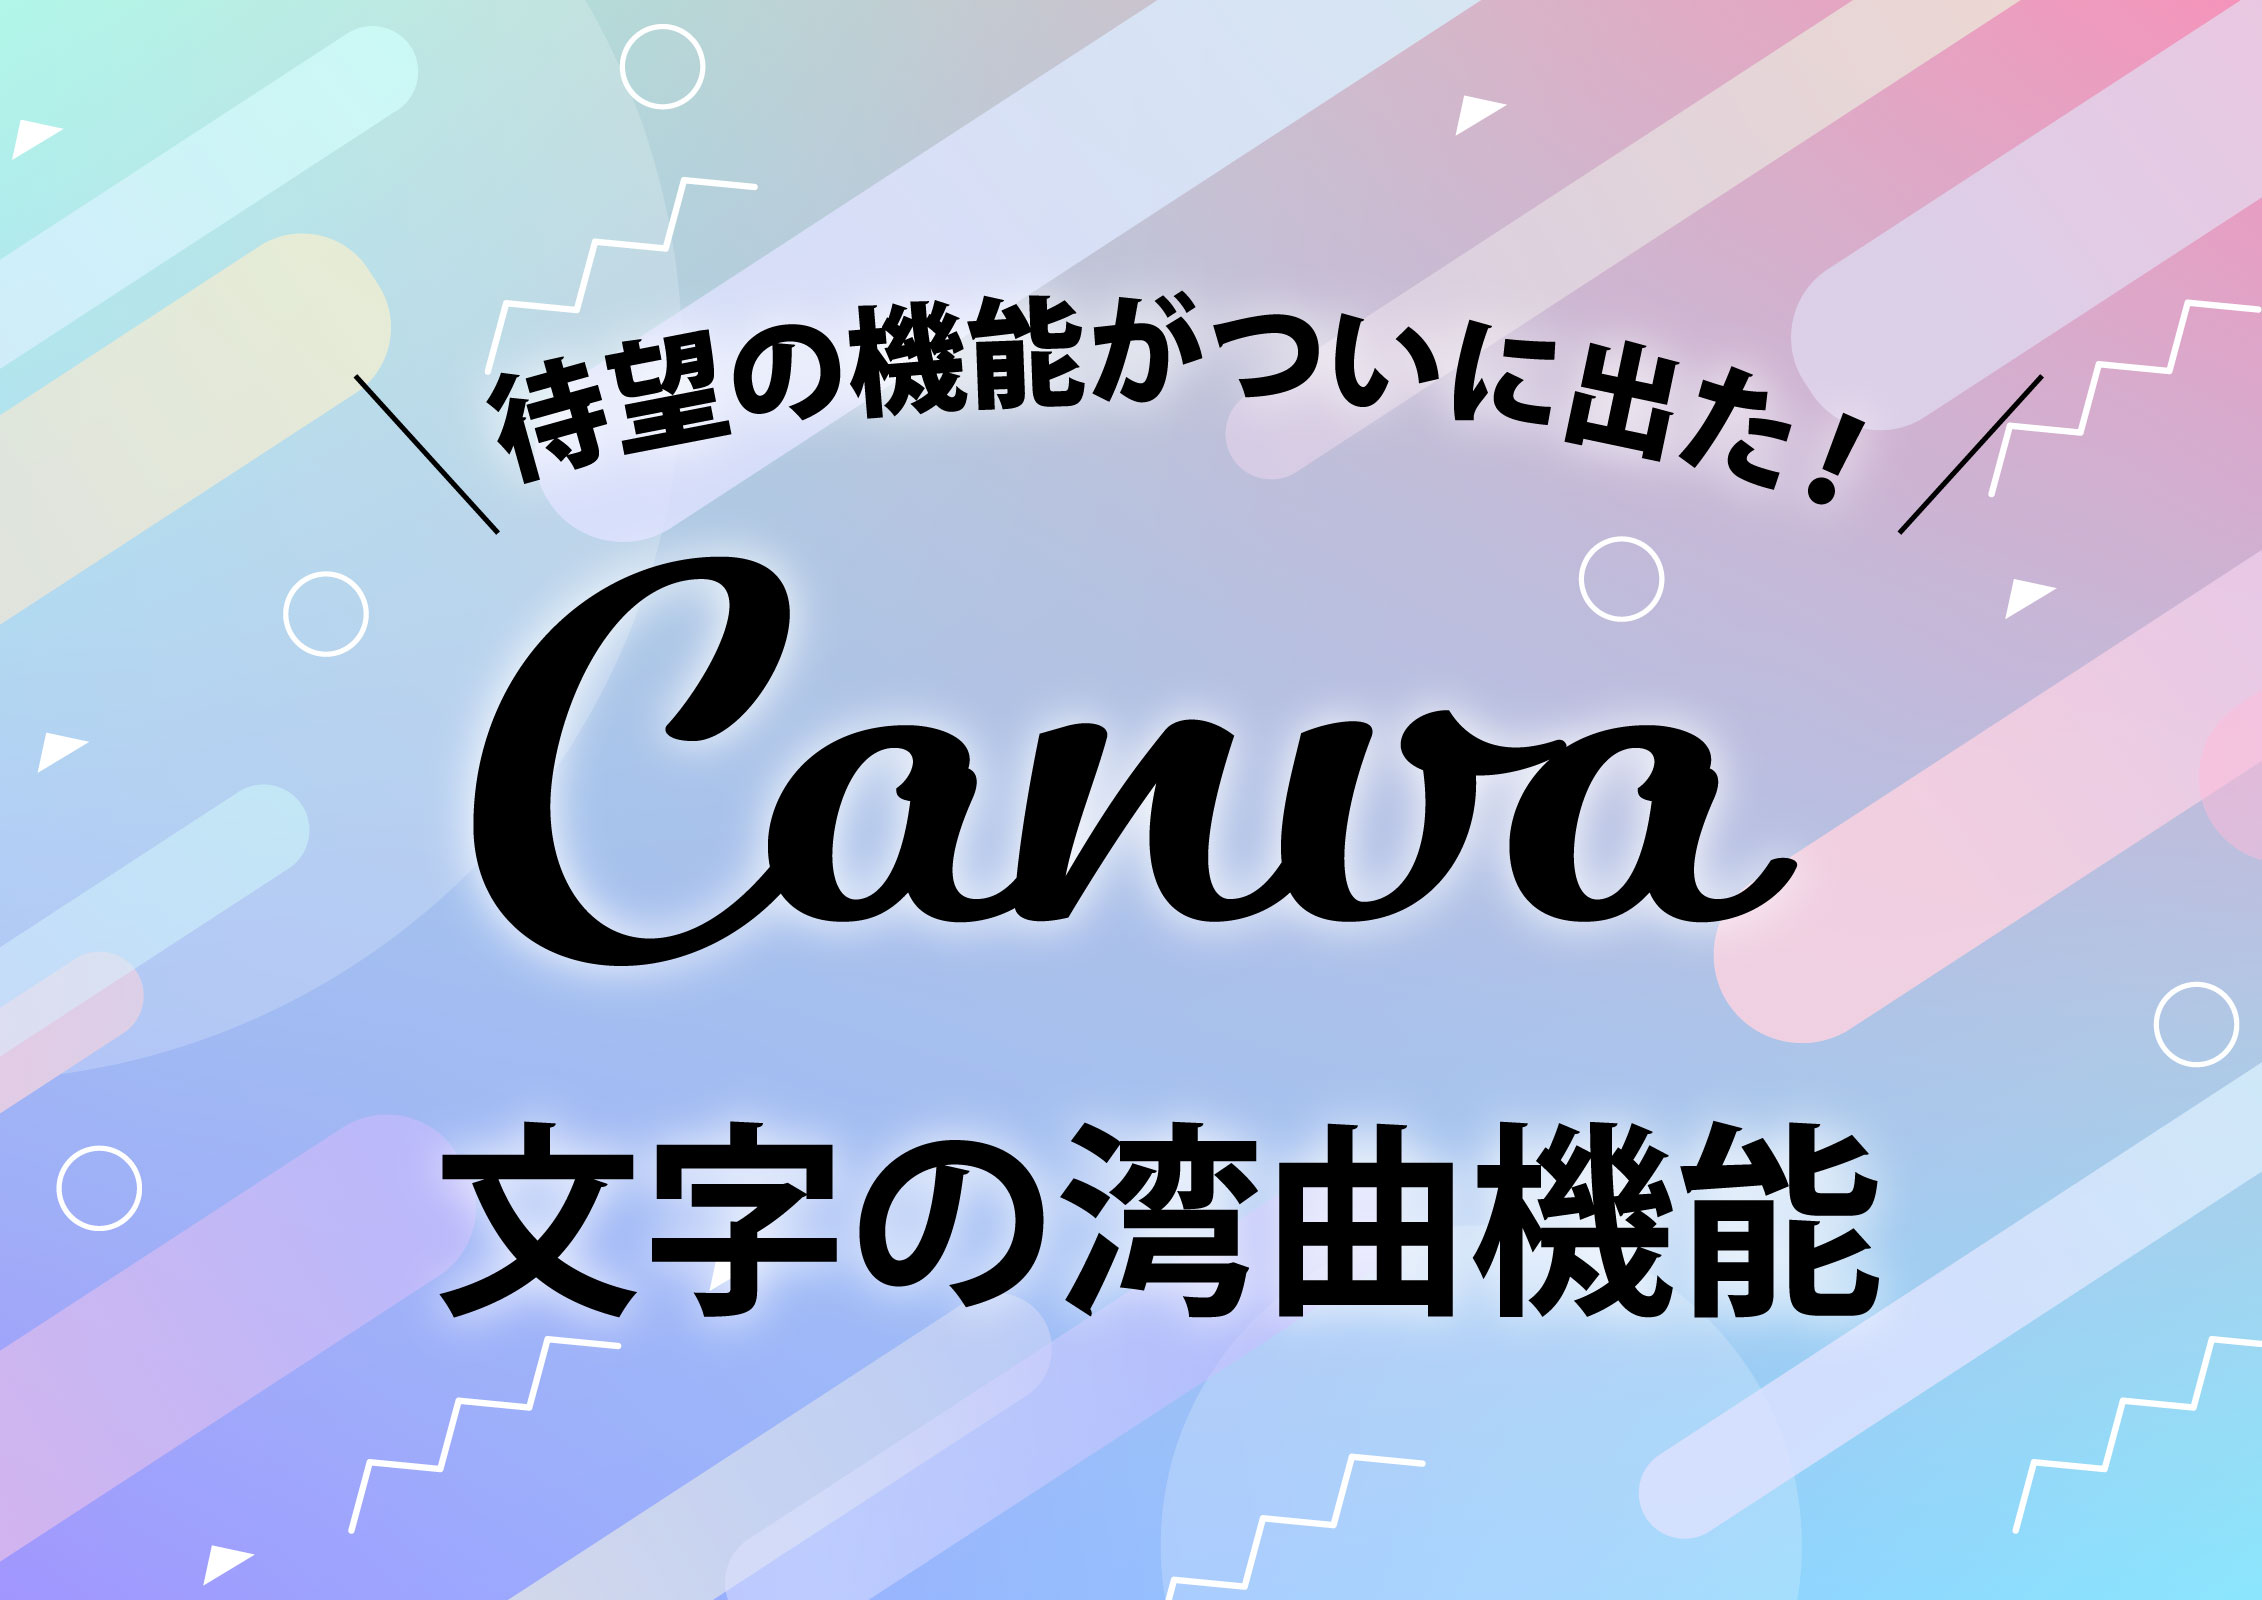 Canvaがテキスト 文字 の変形機能リリース 女性のためのネットスキルアップ塾 Yobicom